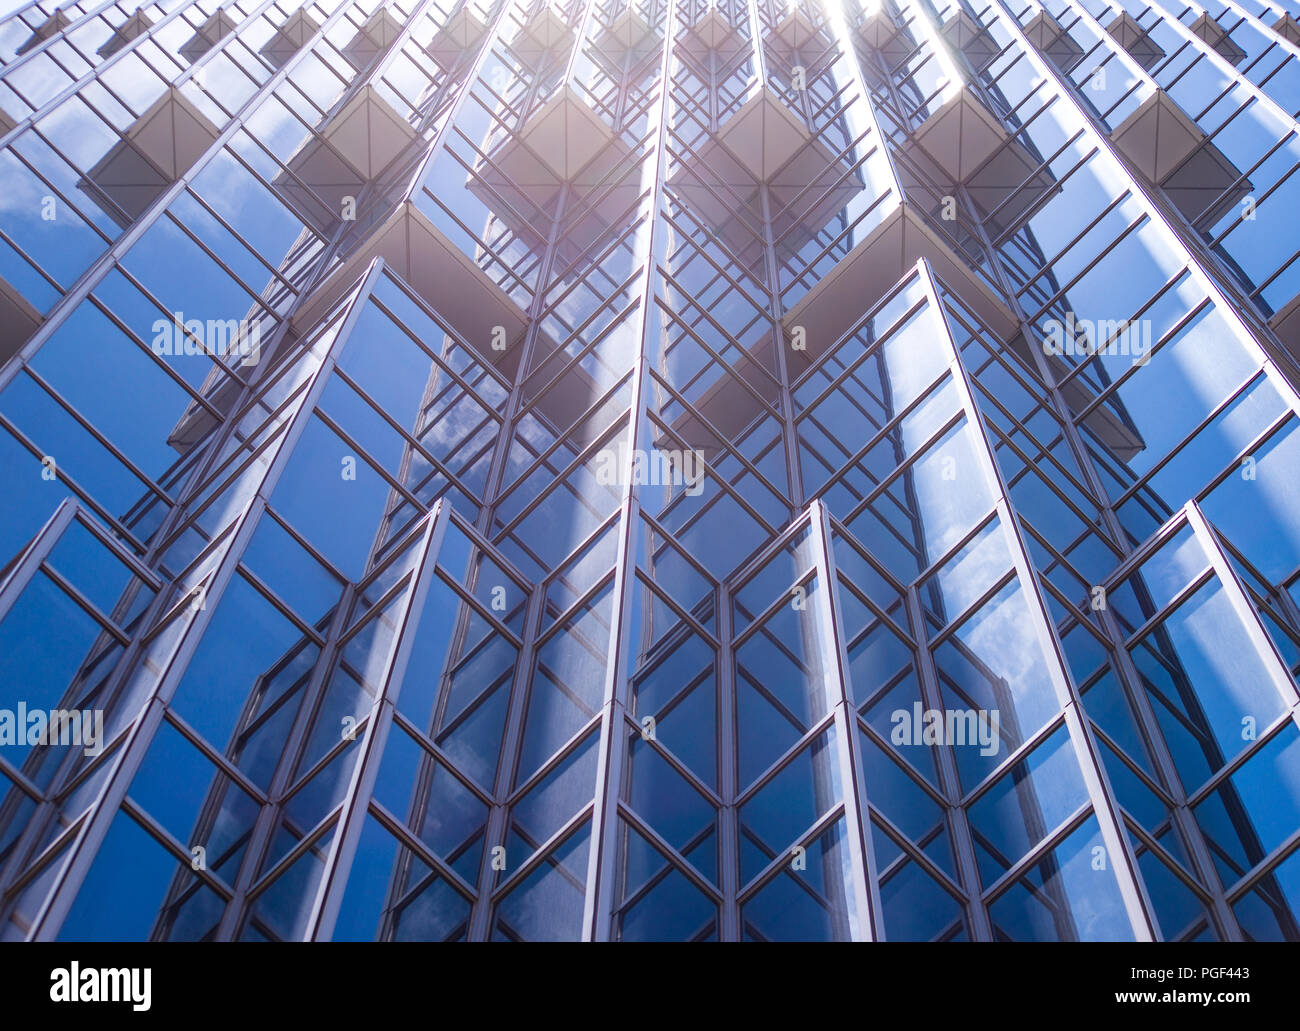 Dessous vue panoramique et vue en perspective d'un bleu acier haut bâtiment de verre des gratte-ciel, concept d'entreprise d'architecture industrielle réussie Banque D'Images